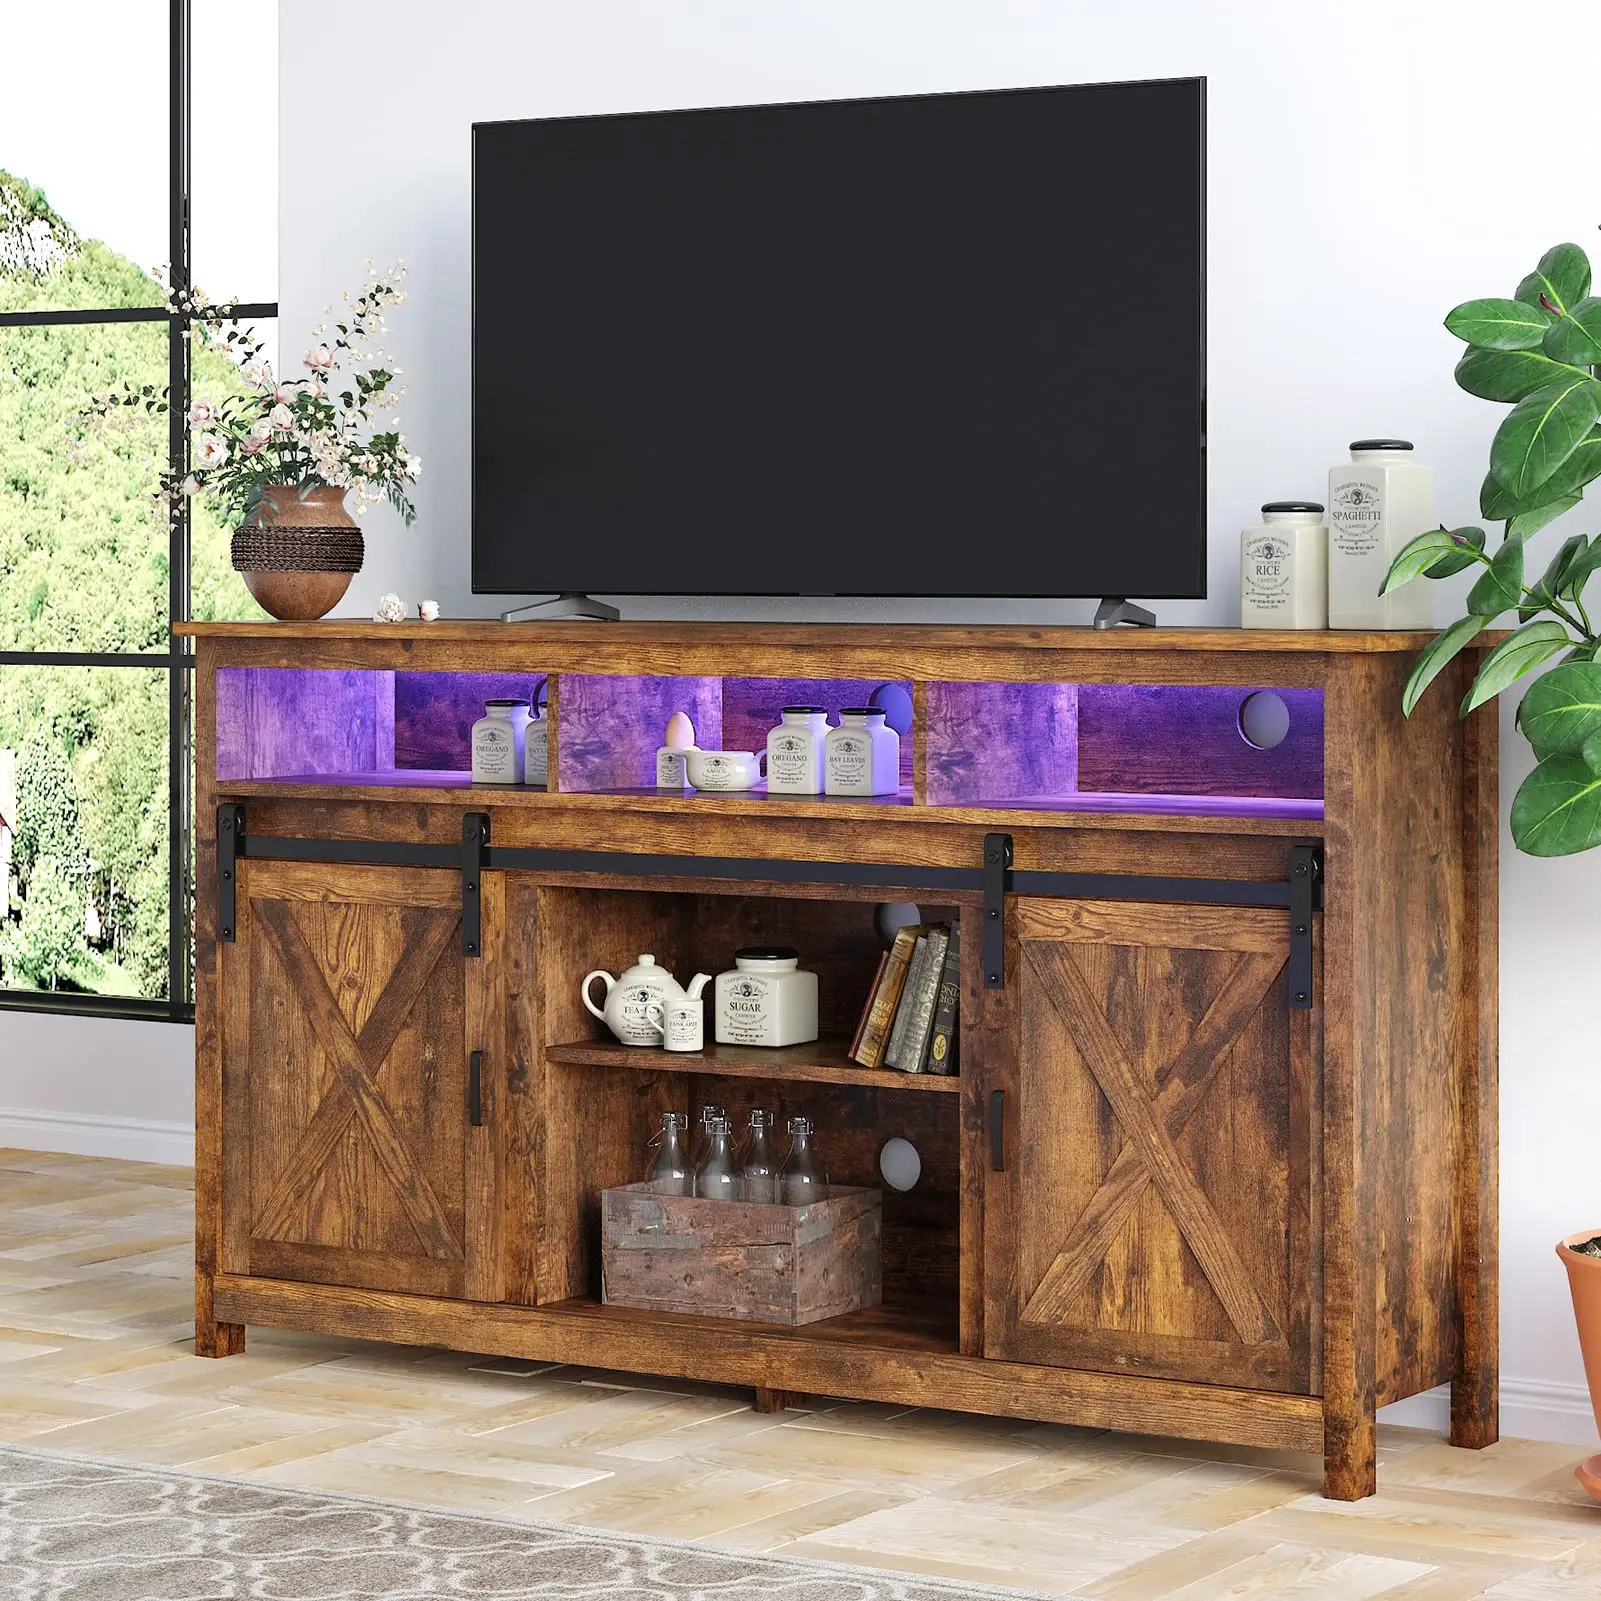 Soporte de TV LED, mueble para el hogar, mueble de estilo antiguo, Unidad de Soporte moderna